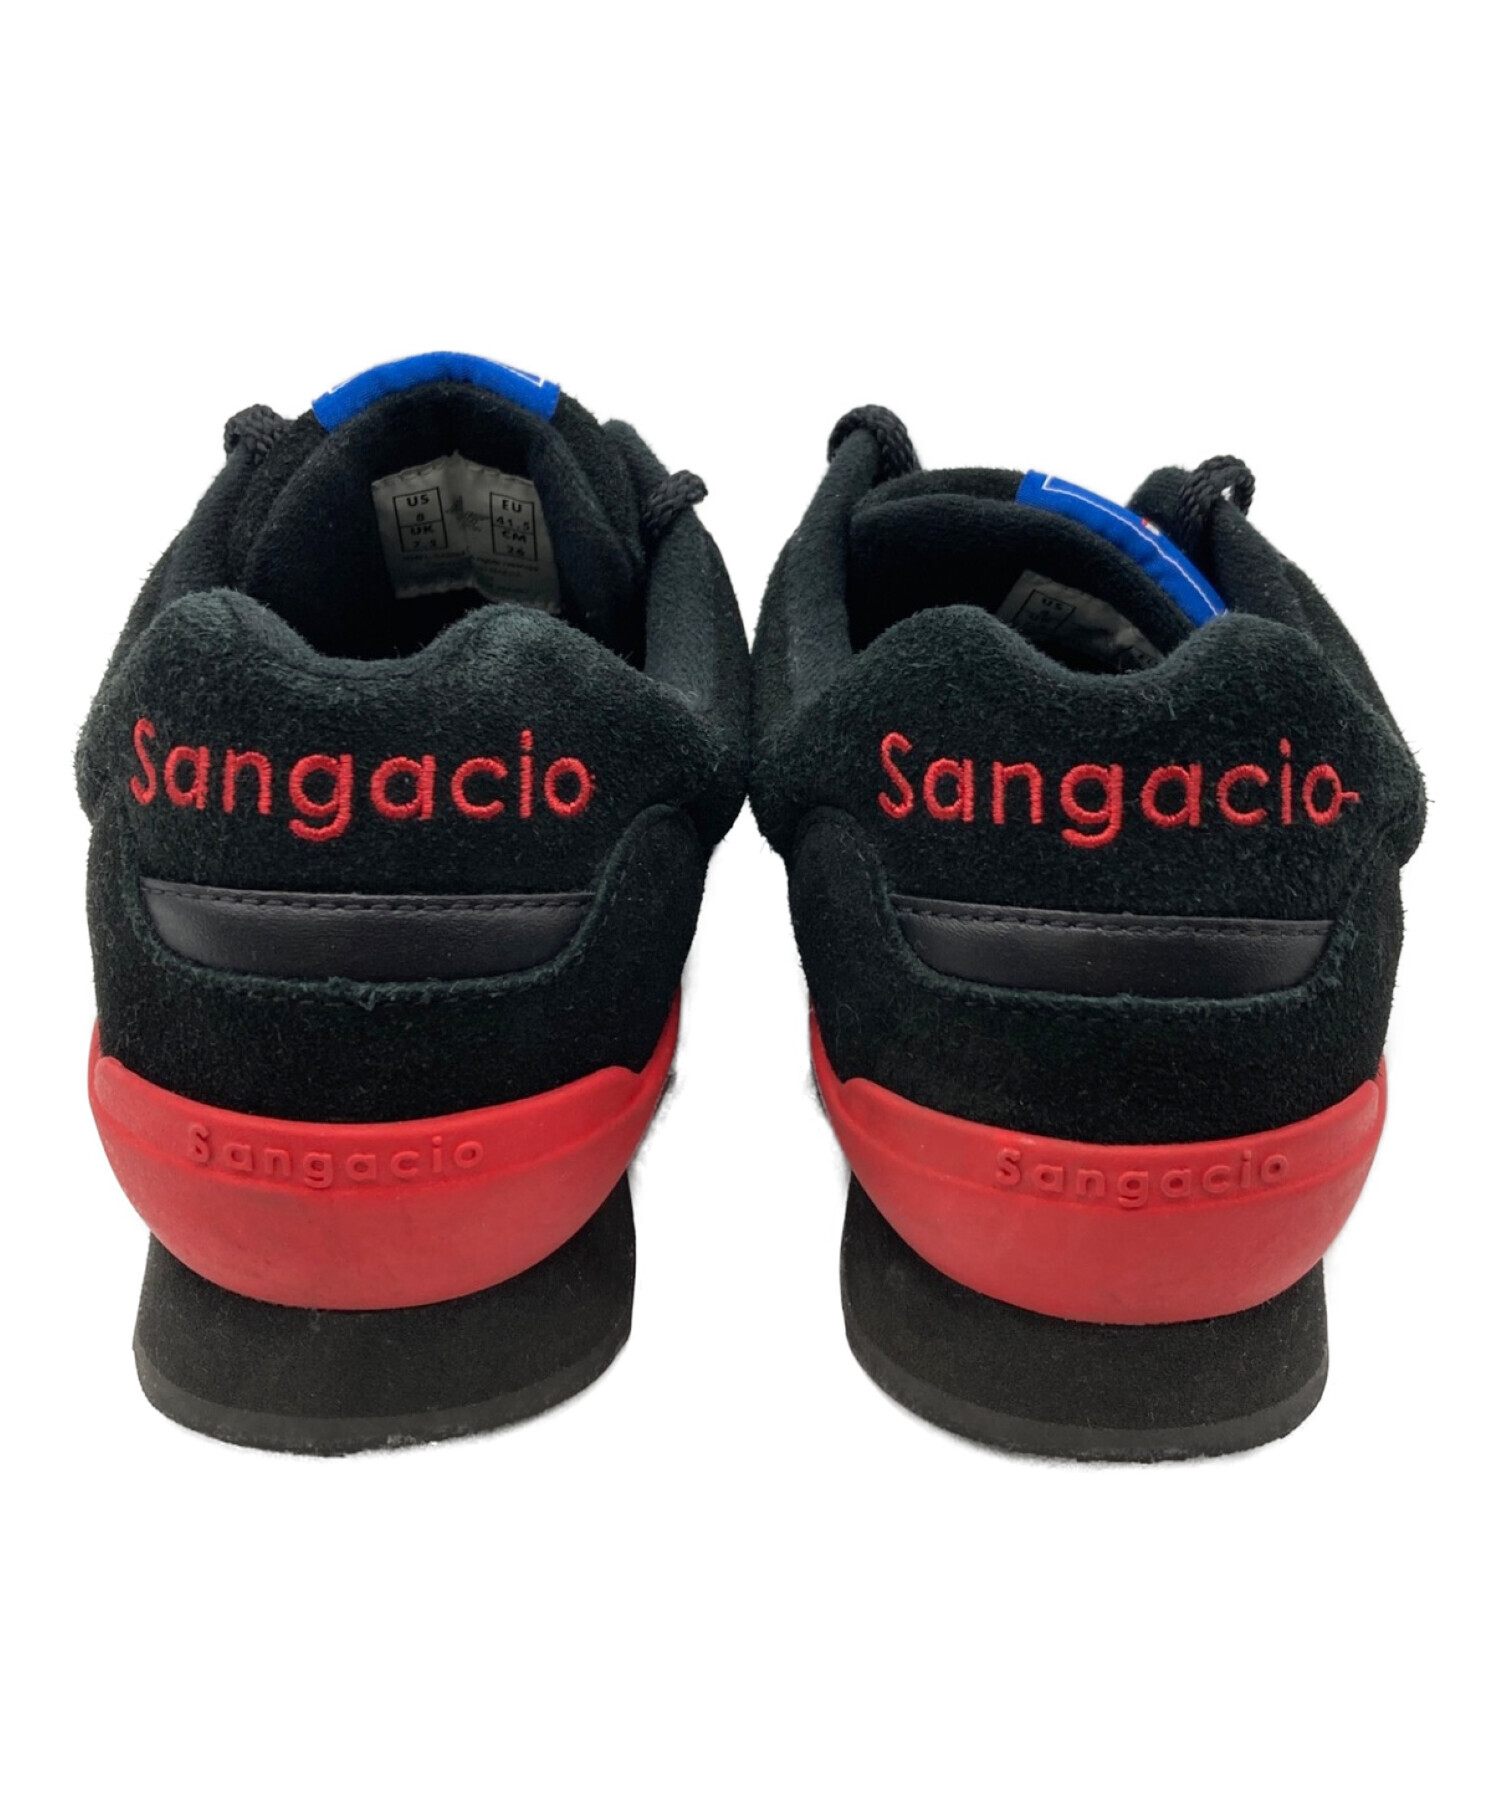 SANGACIO (サンガッチョ) にゅ～ず『BLACK RED』 ブラック×レッド サイズ:26cm